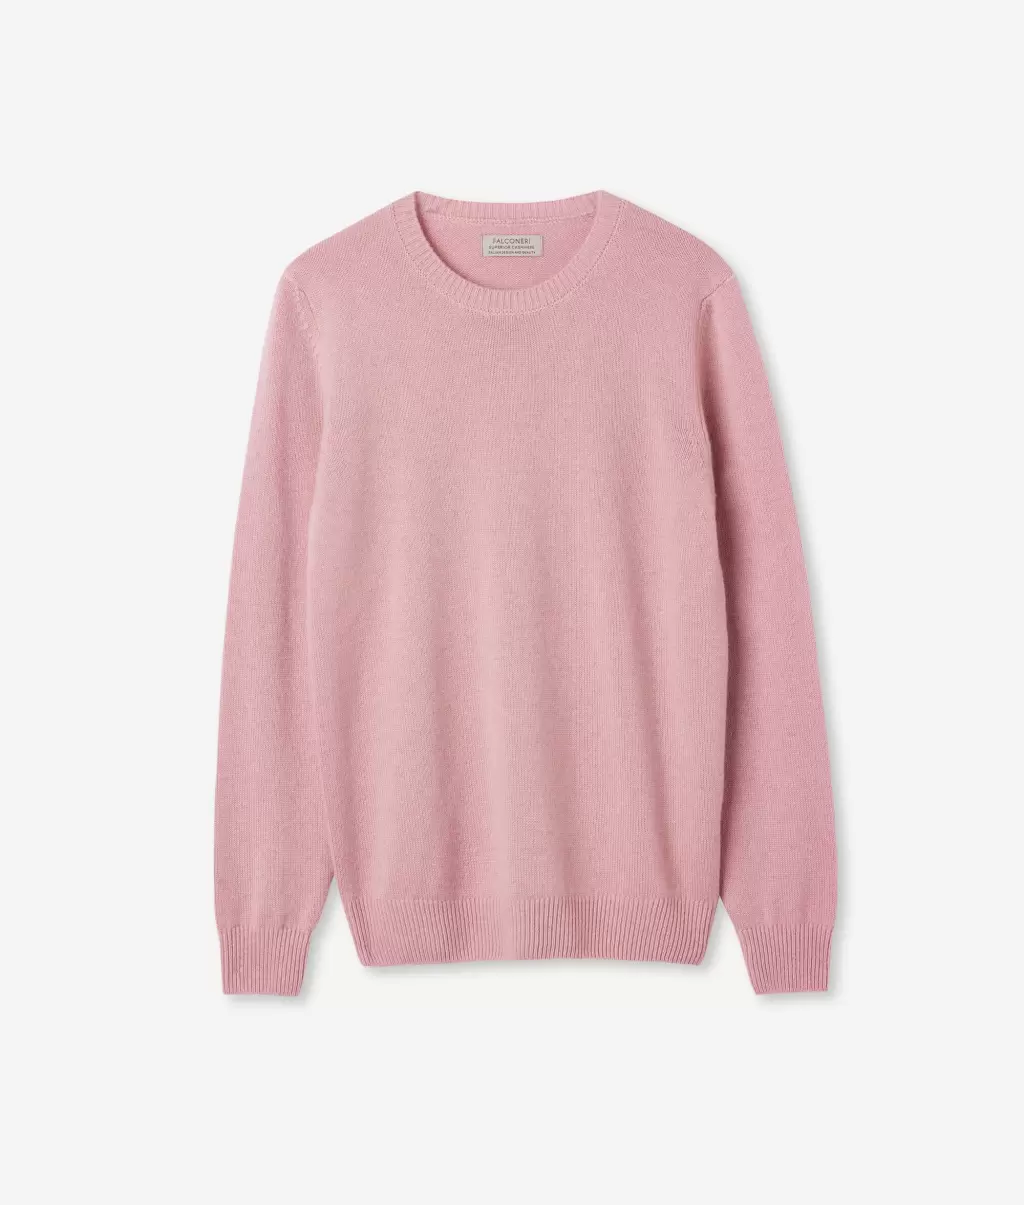 Swetry Z Okrągłym Dekoltem Pulower Z Kaszmiru Ultrasoft Pale_Pink Falconeri Kobieta - 4